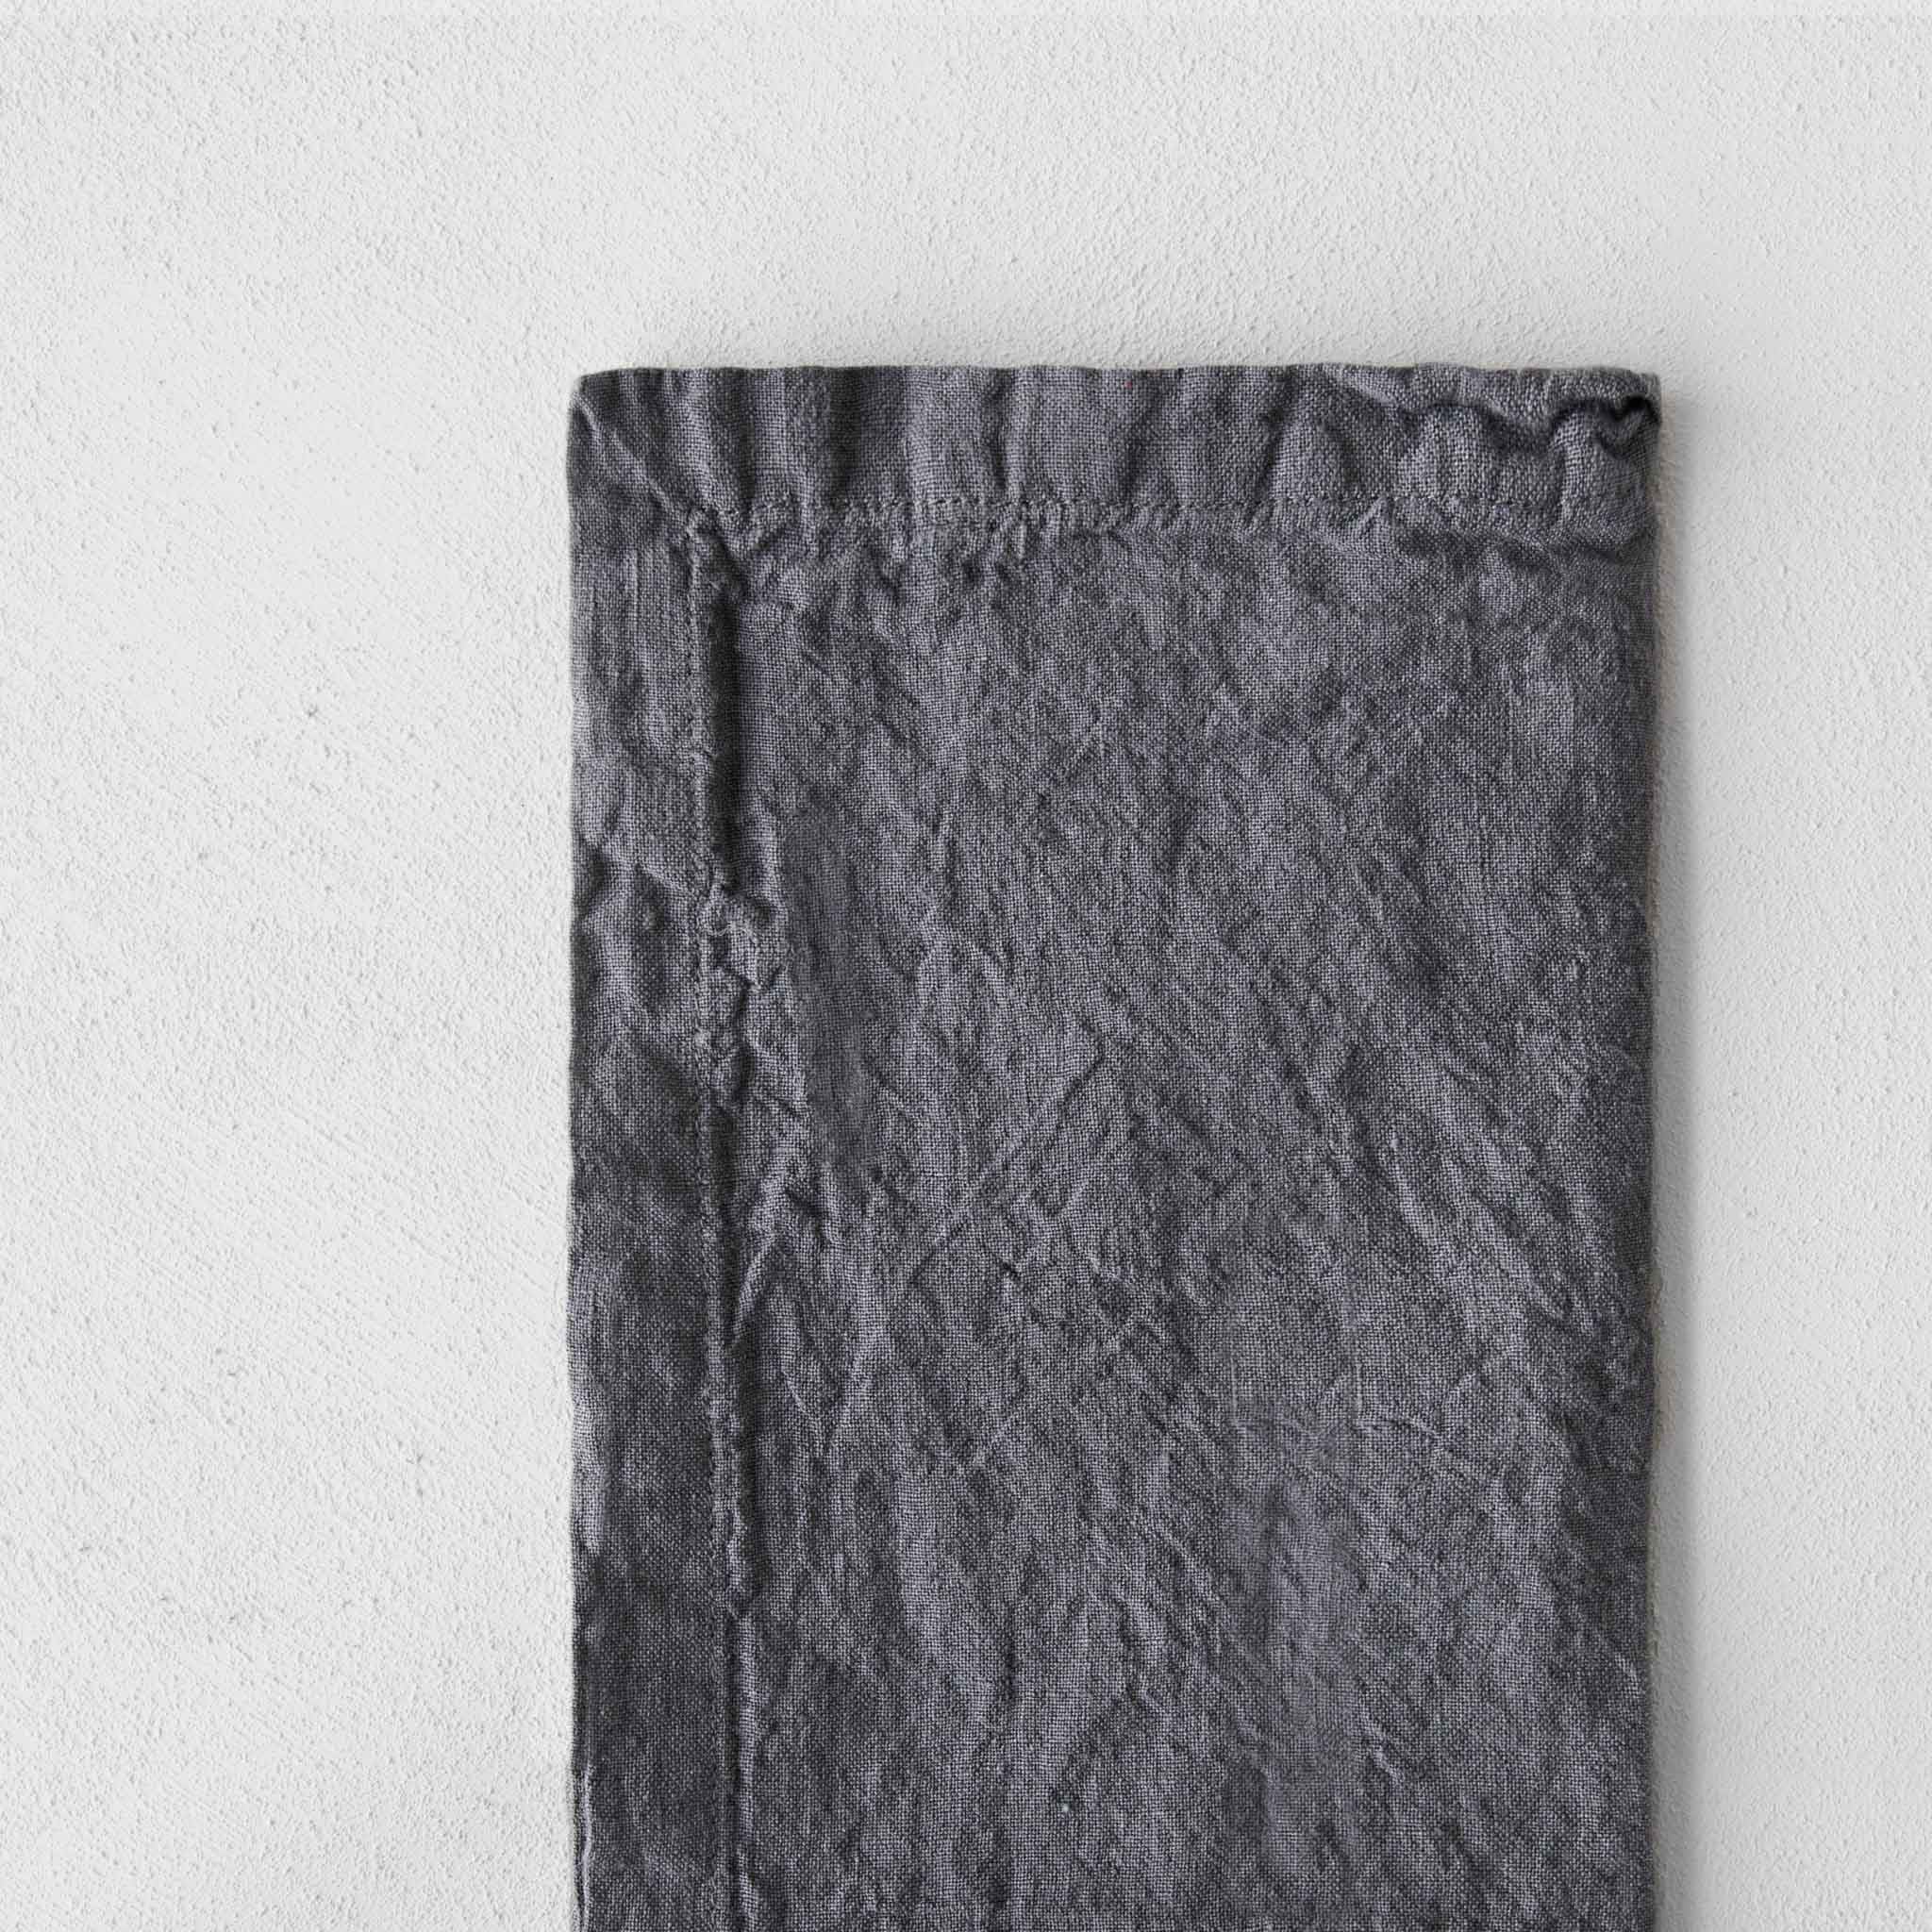 Linen Napkins & Serviettes | Charcoal Grey  | Hale Mercantile Co.